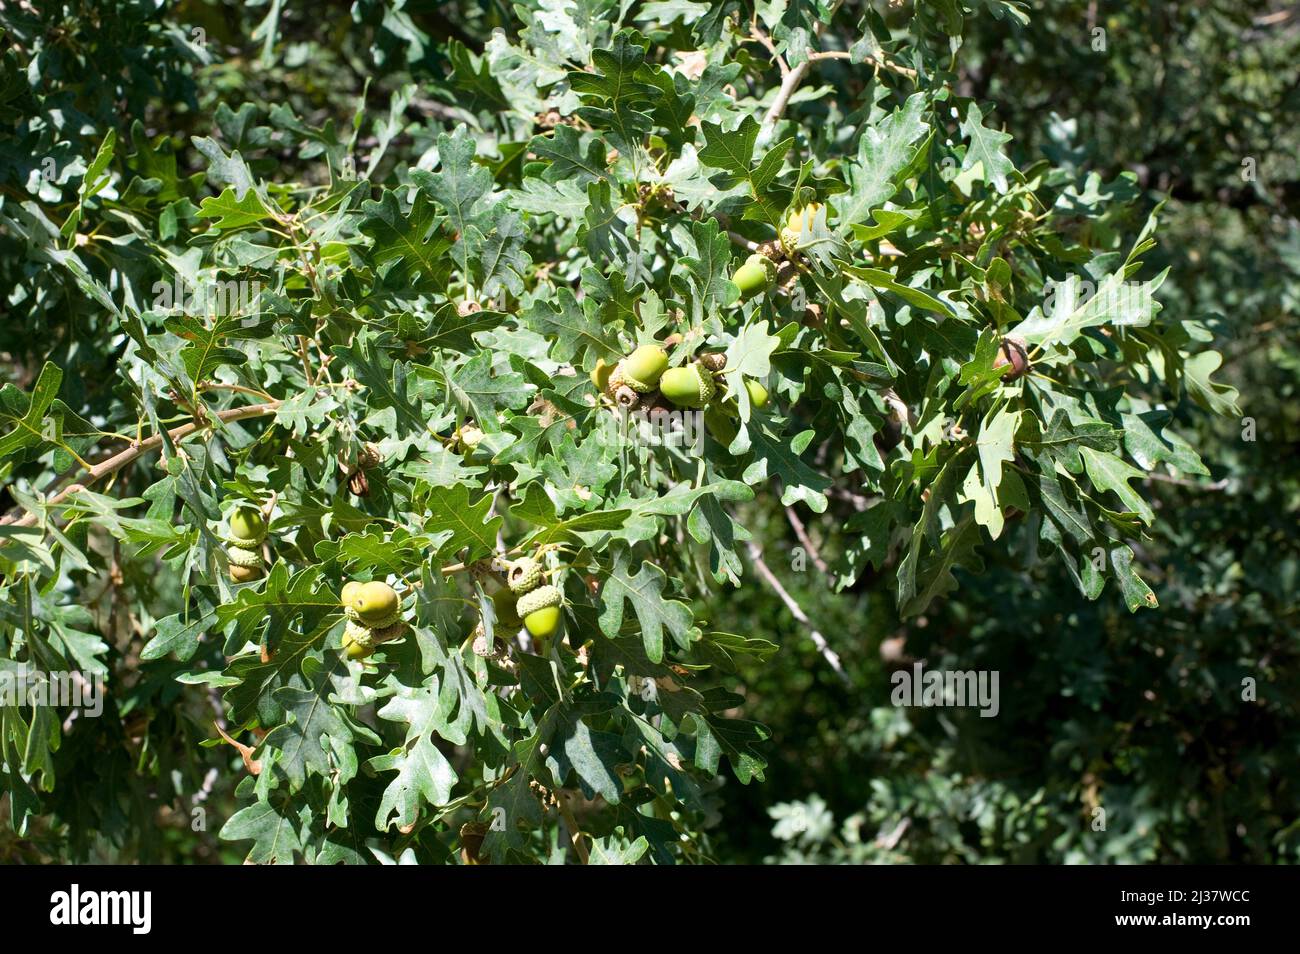 El roble de gambel (Quercus gambelii) es un árbol deciduo pequeño nativo del centro oeste de los Estados Unidos. Detalle de frutas (bellotas) y hojas. Esta foto fue tomada en Foto de stock